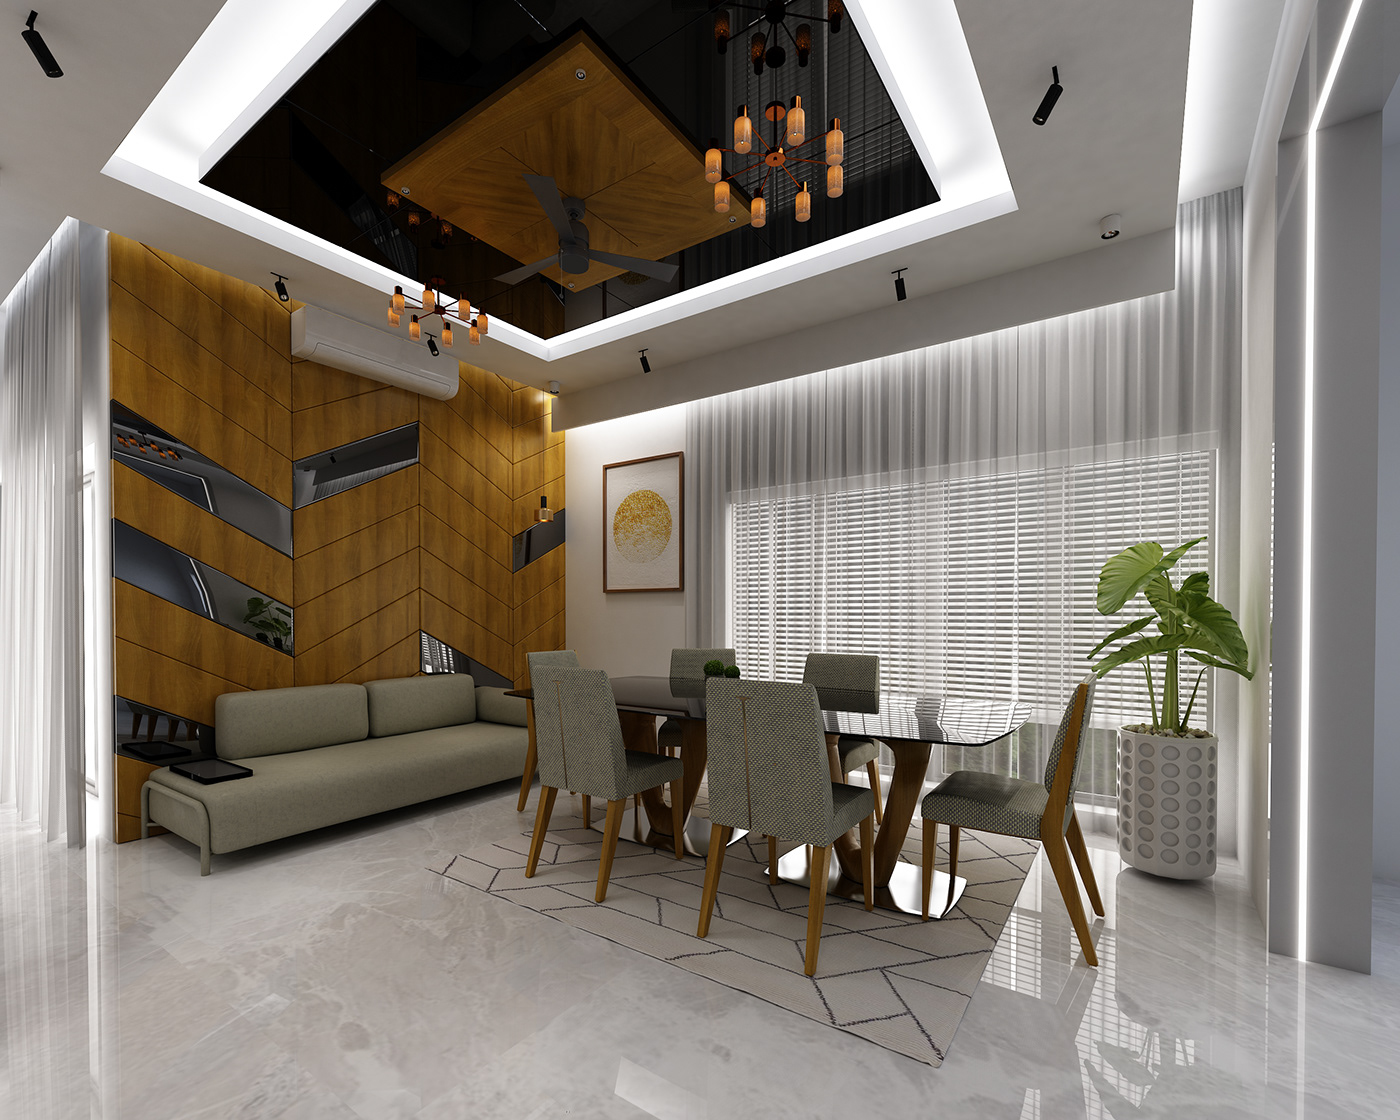 3ds max architecture interior design  modern vray exterior Render 3D archviz CGI